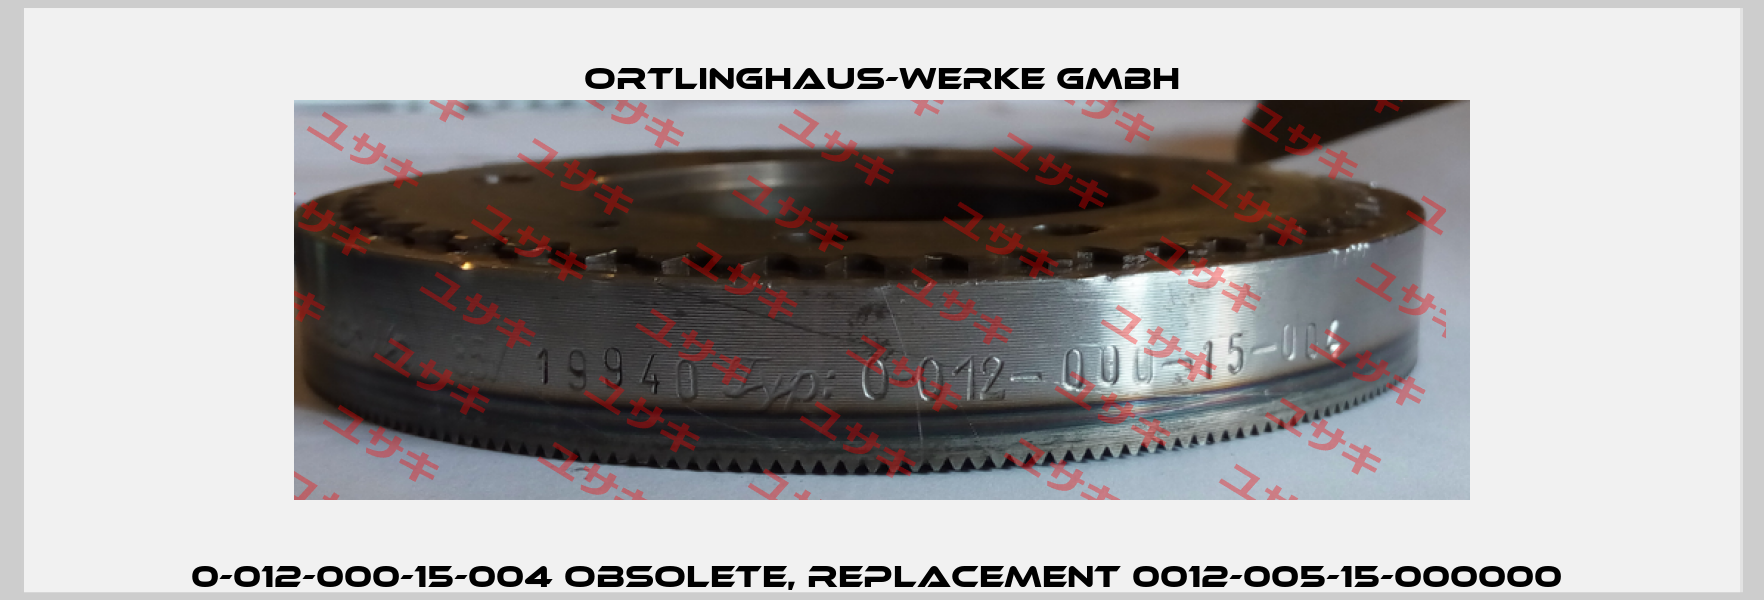 0-012-000-15-004 obsolete, replacement 0012-005-15-000000  Ortlinghaus-Werke GmbH